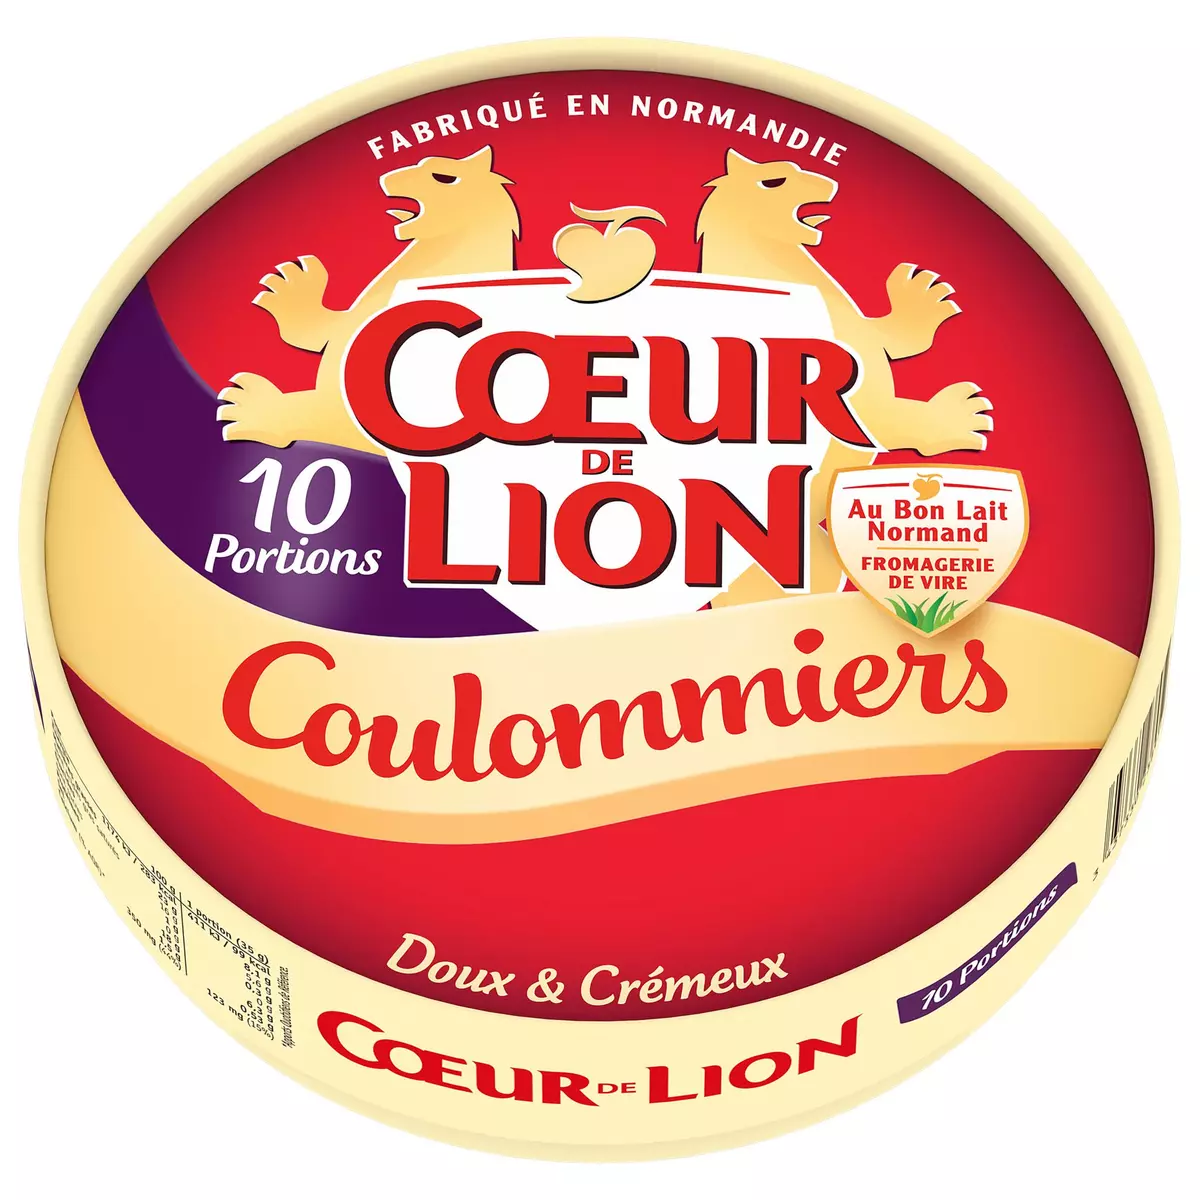 COEUR DE LION Coulommiers doux & crémeux en portions 10 portions 350g